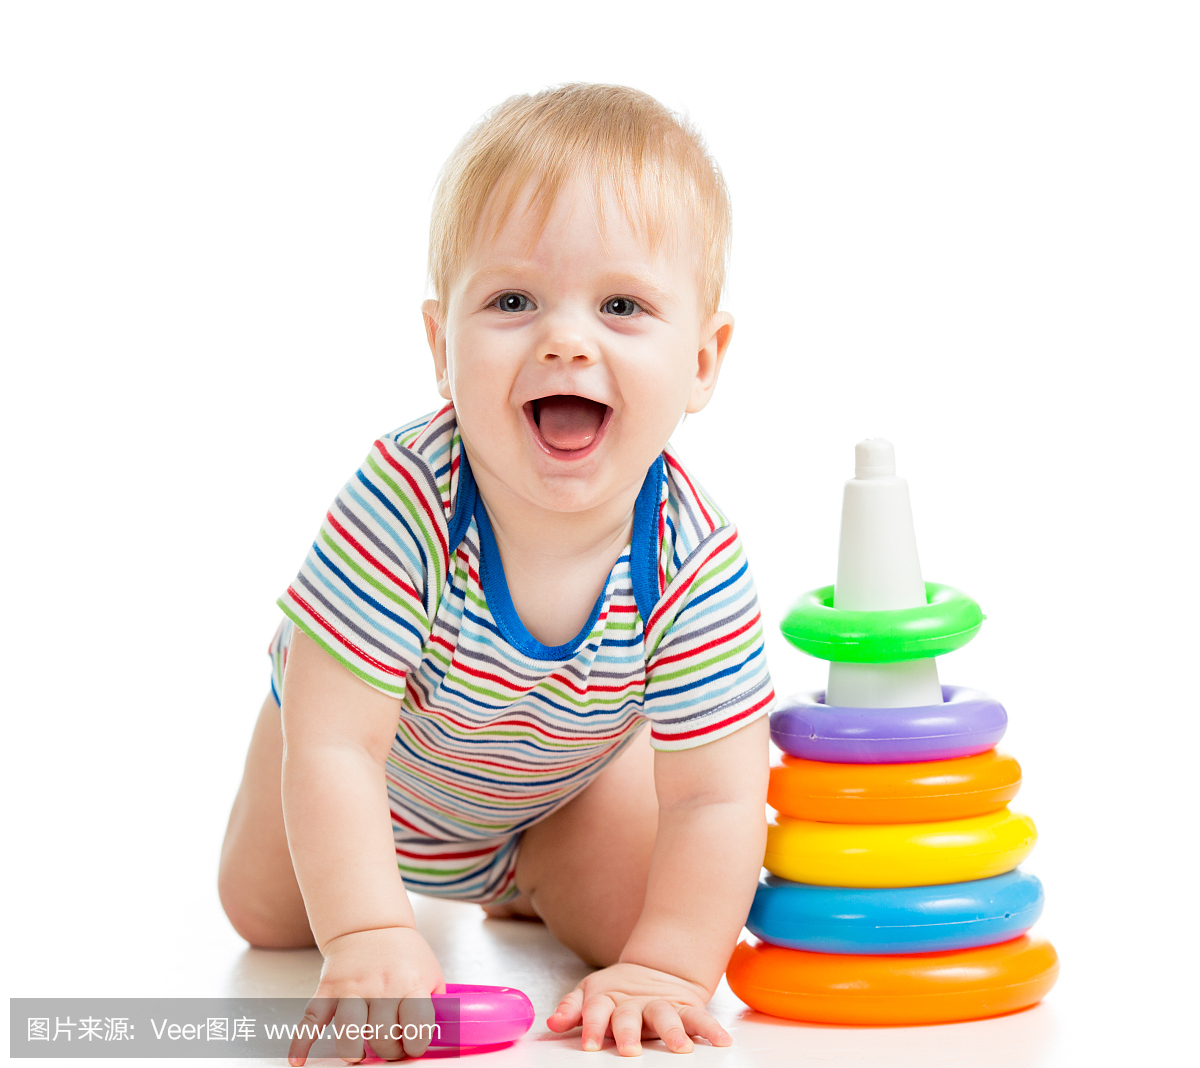 快乐的男婴玩彩色玩具被隔绝在白色